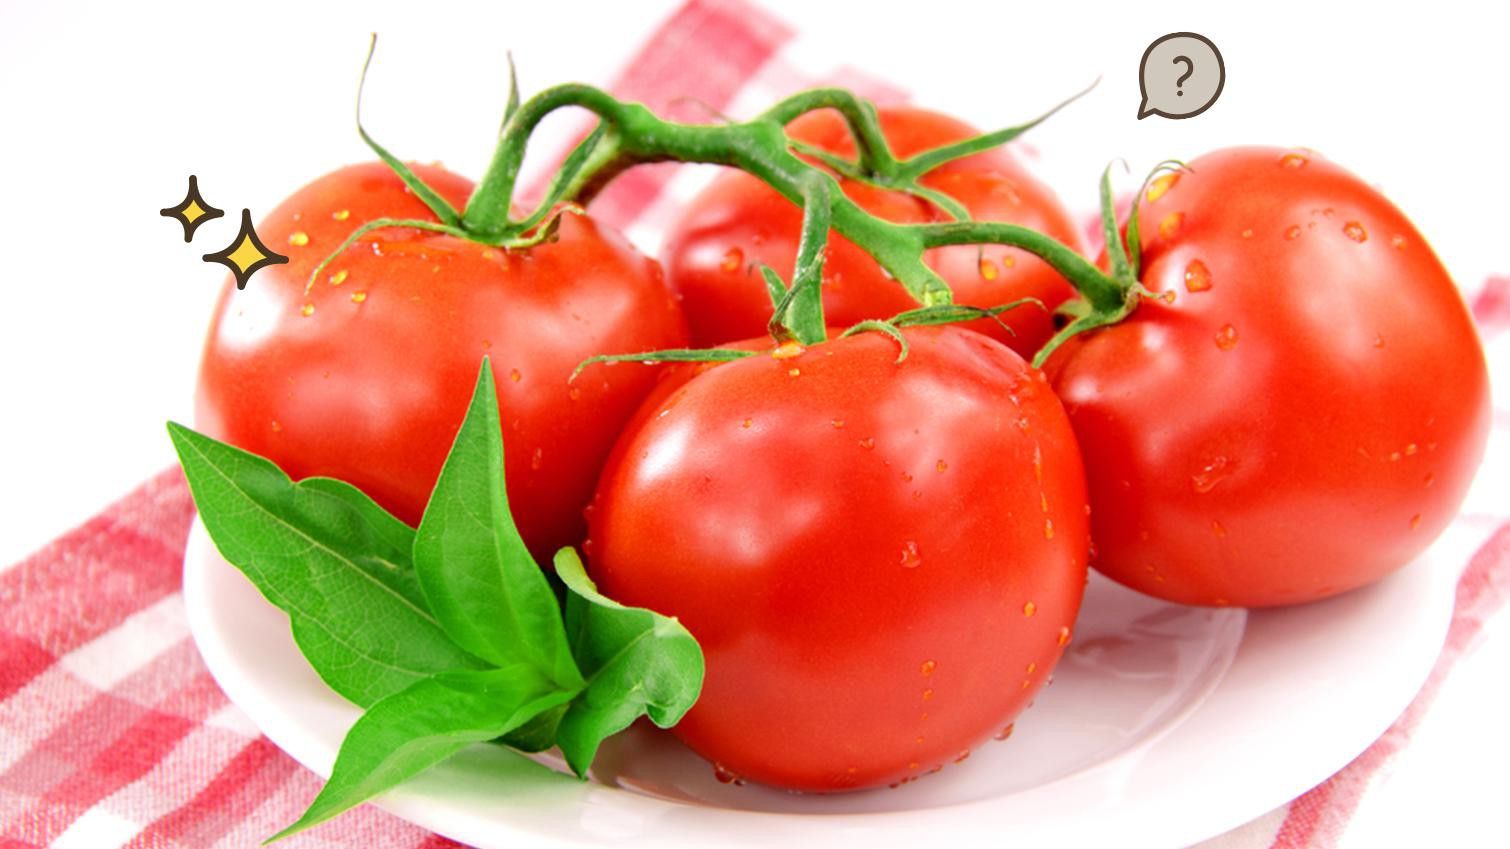 Makan Tomat Bisa Meningkatkan Kesuburan Pria? Ini Kata Ahli!